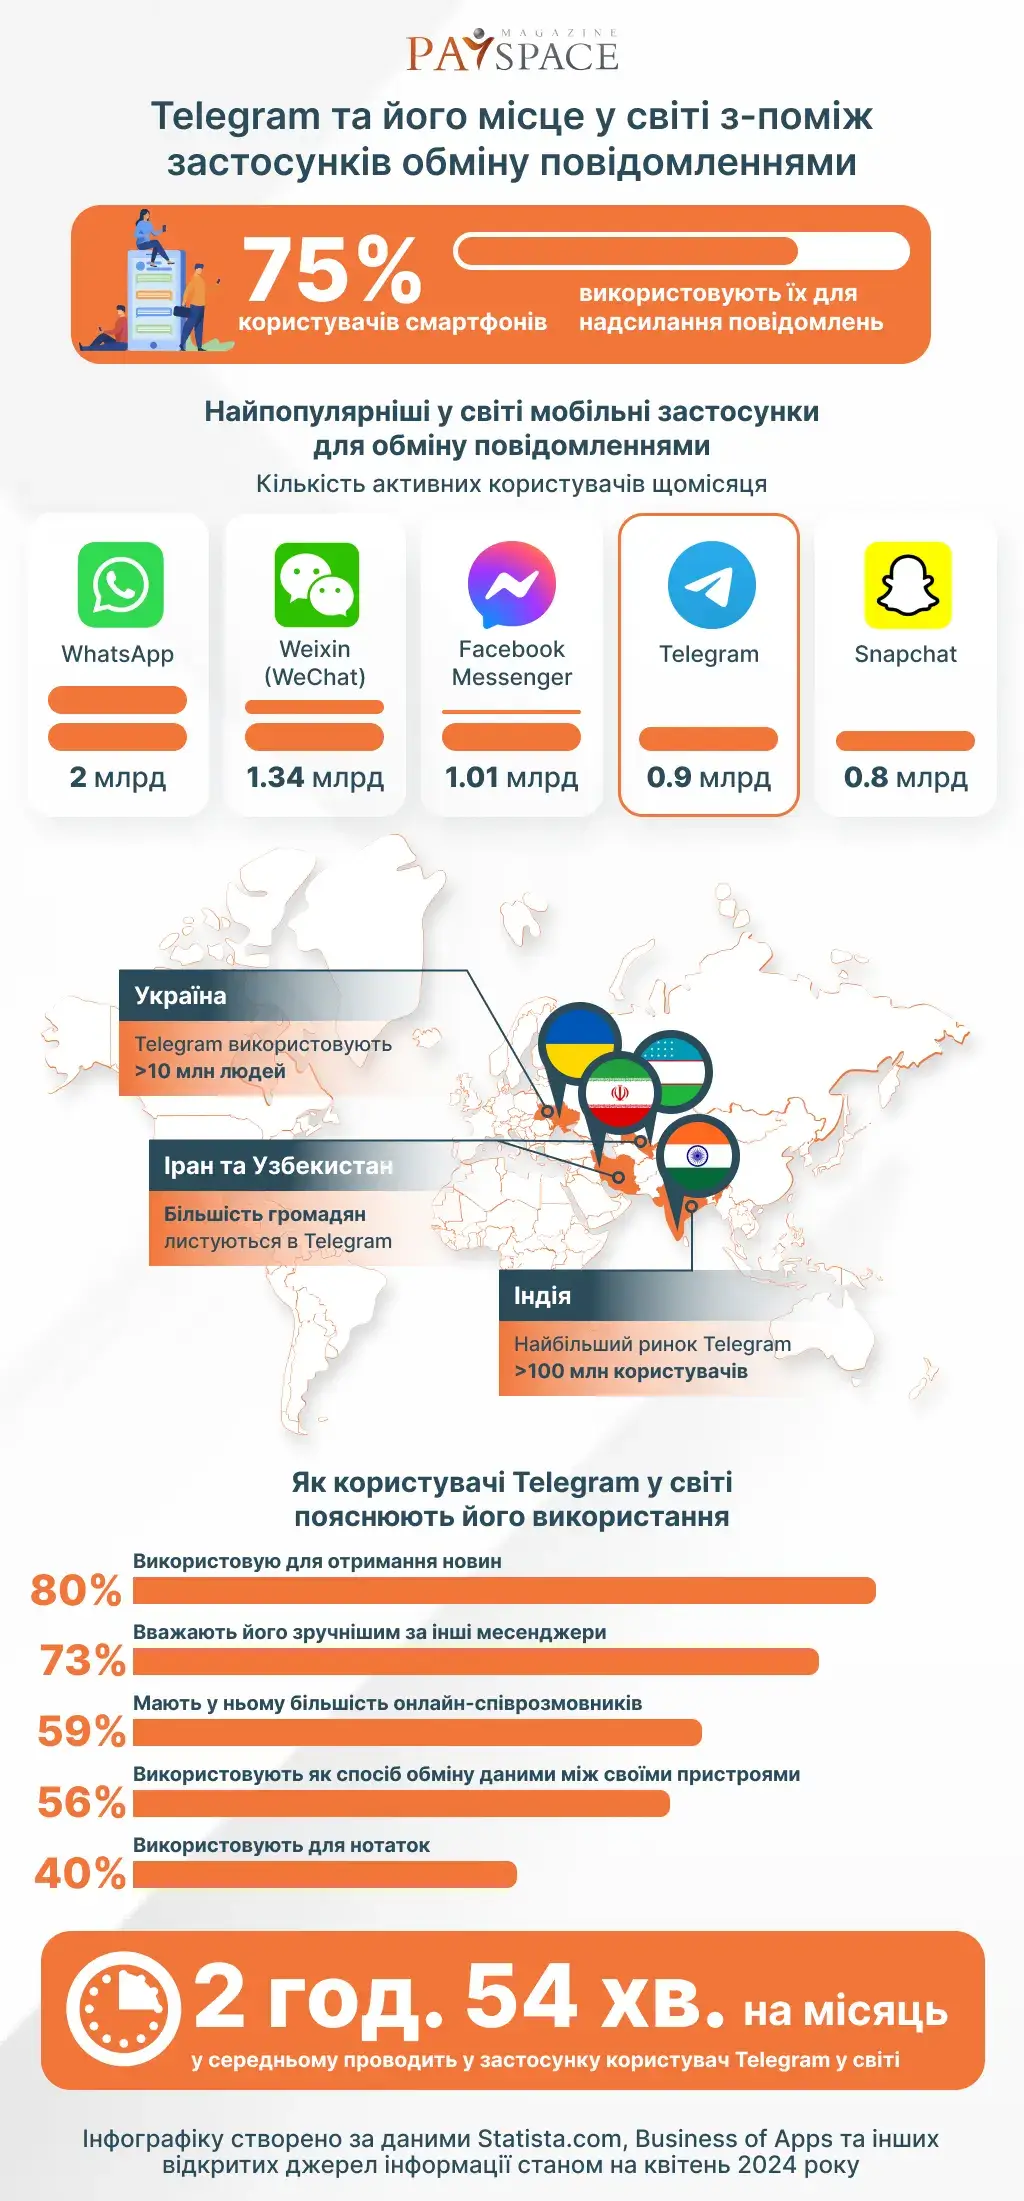 Какое место занимает Telegram в глобальном рейтинге мессенджеров